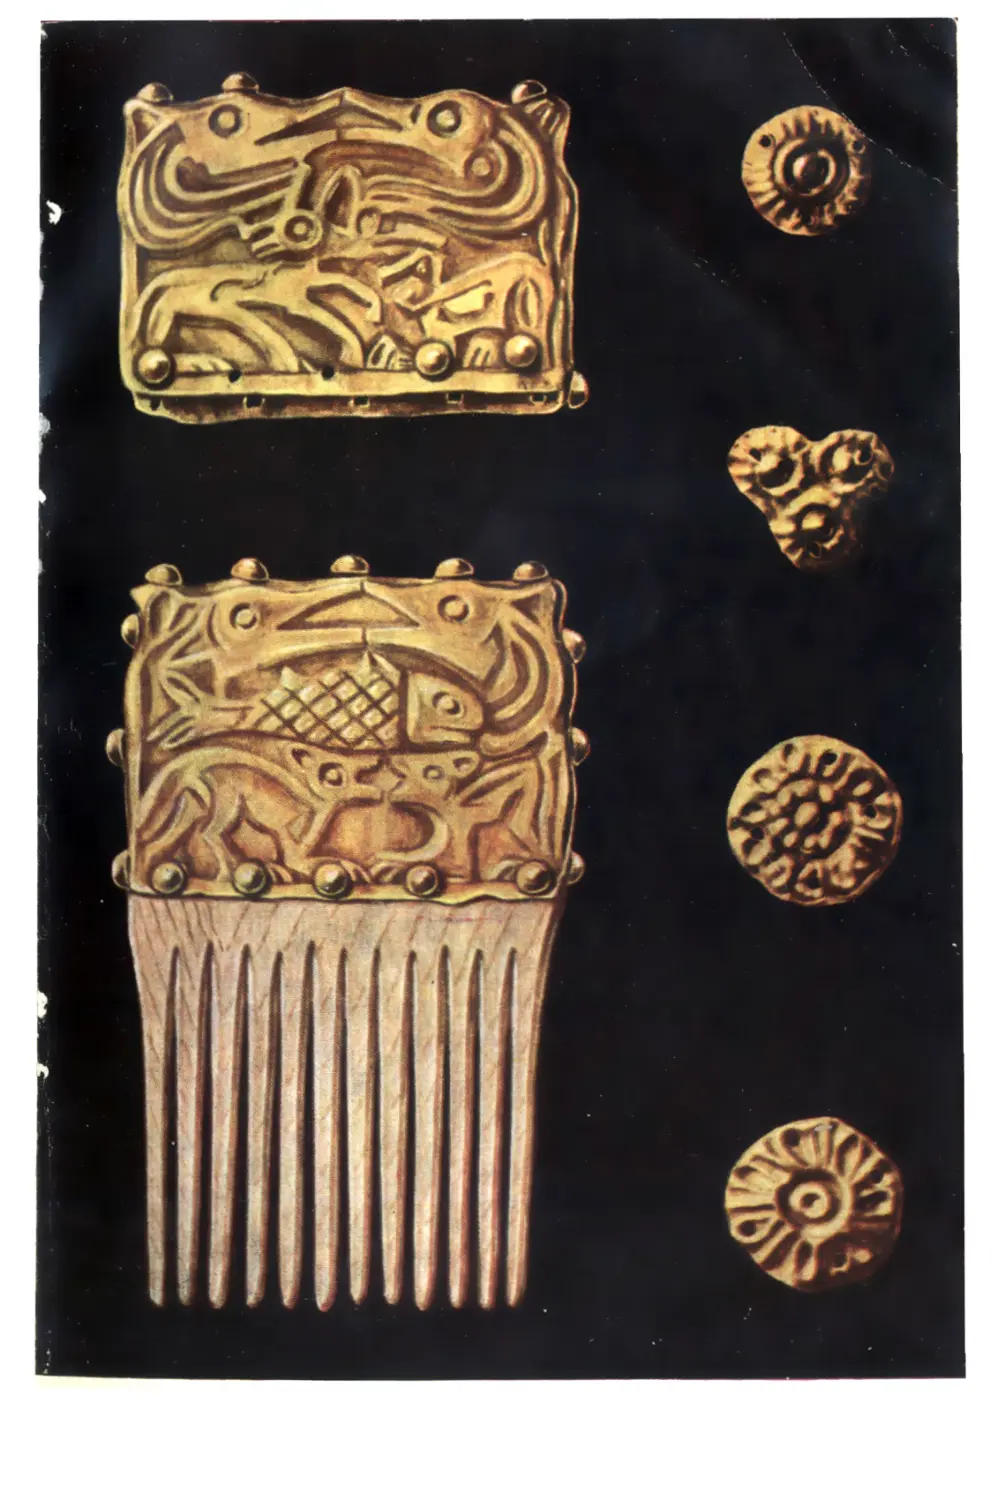 Вклейка. Золотая обкладка костяного гребня с изображением в скифском зверином стиле и бляшки IV— III вв. до н. э. из курганов у с. Мастюгино